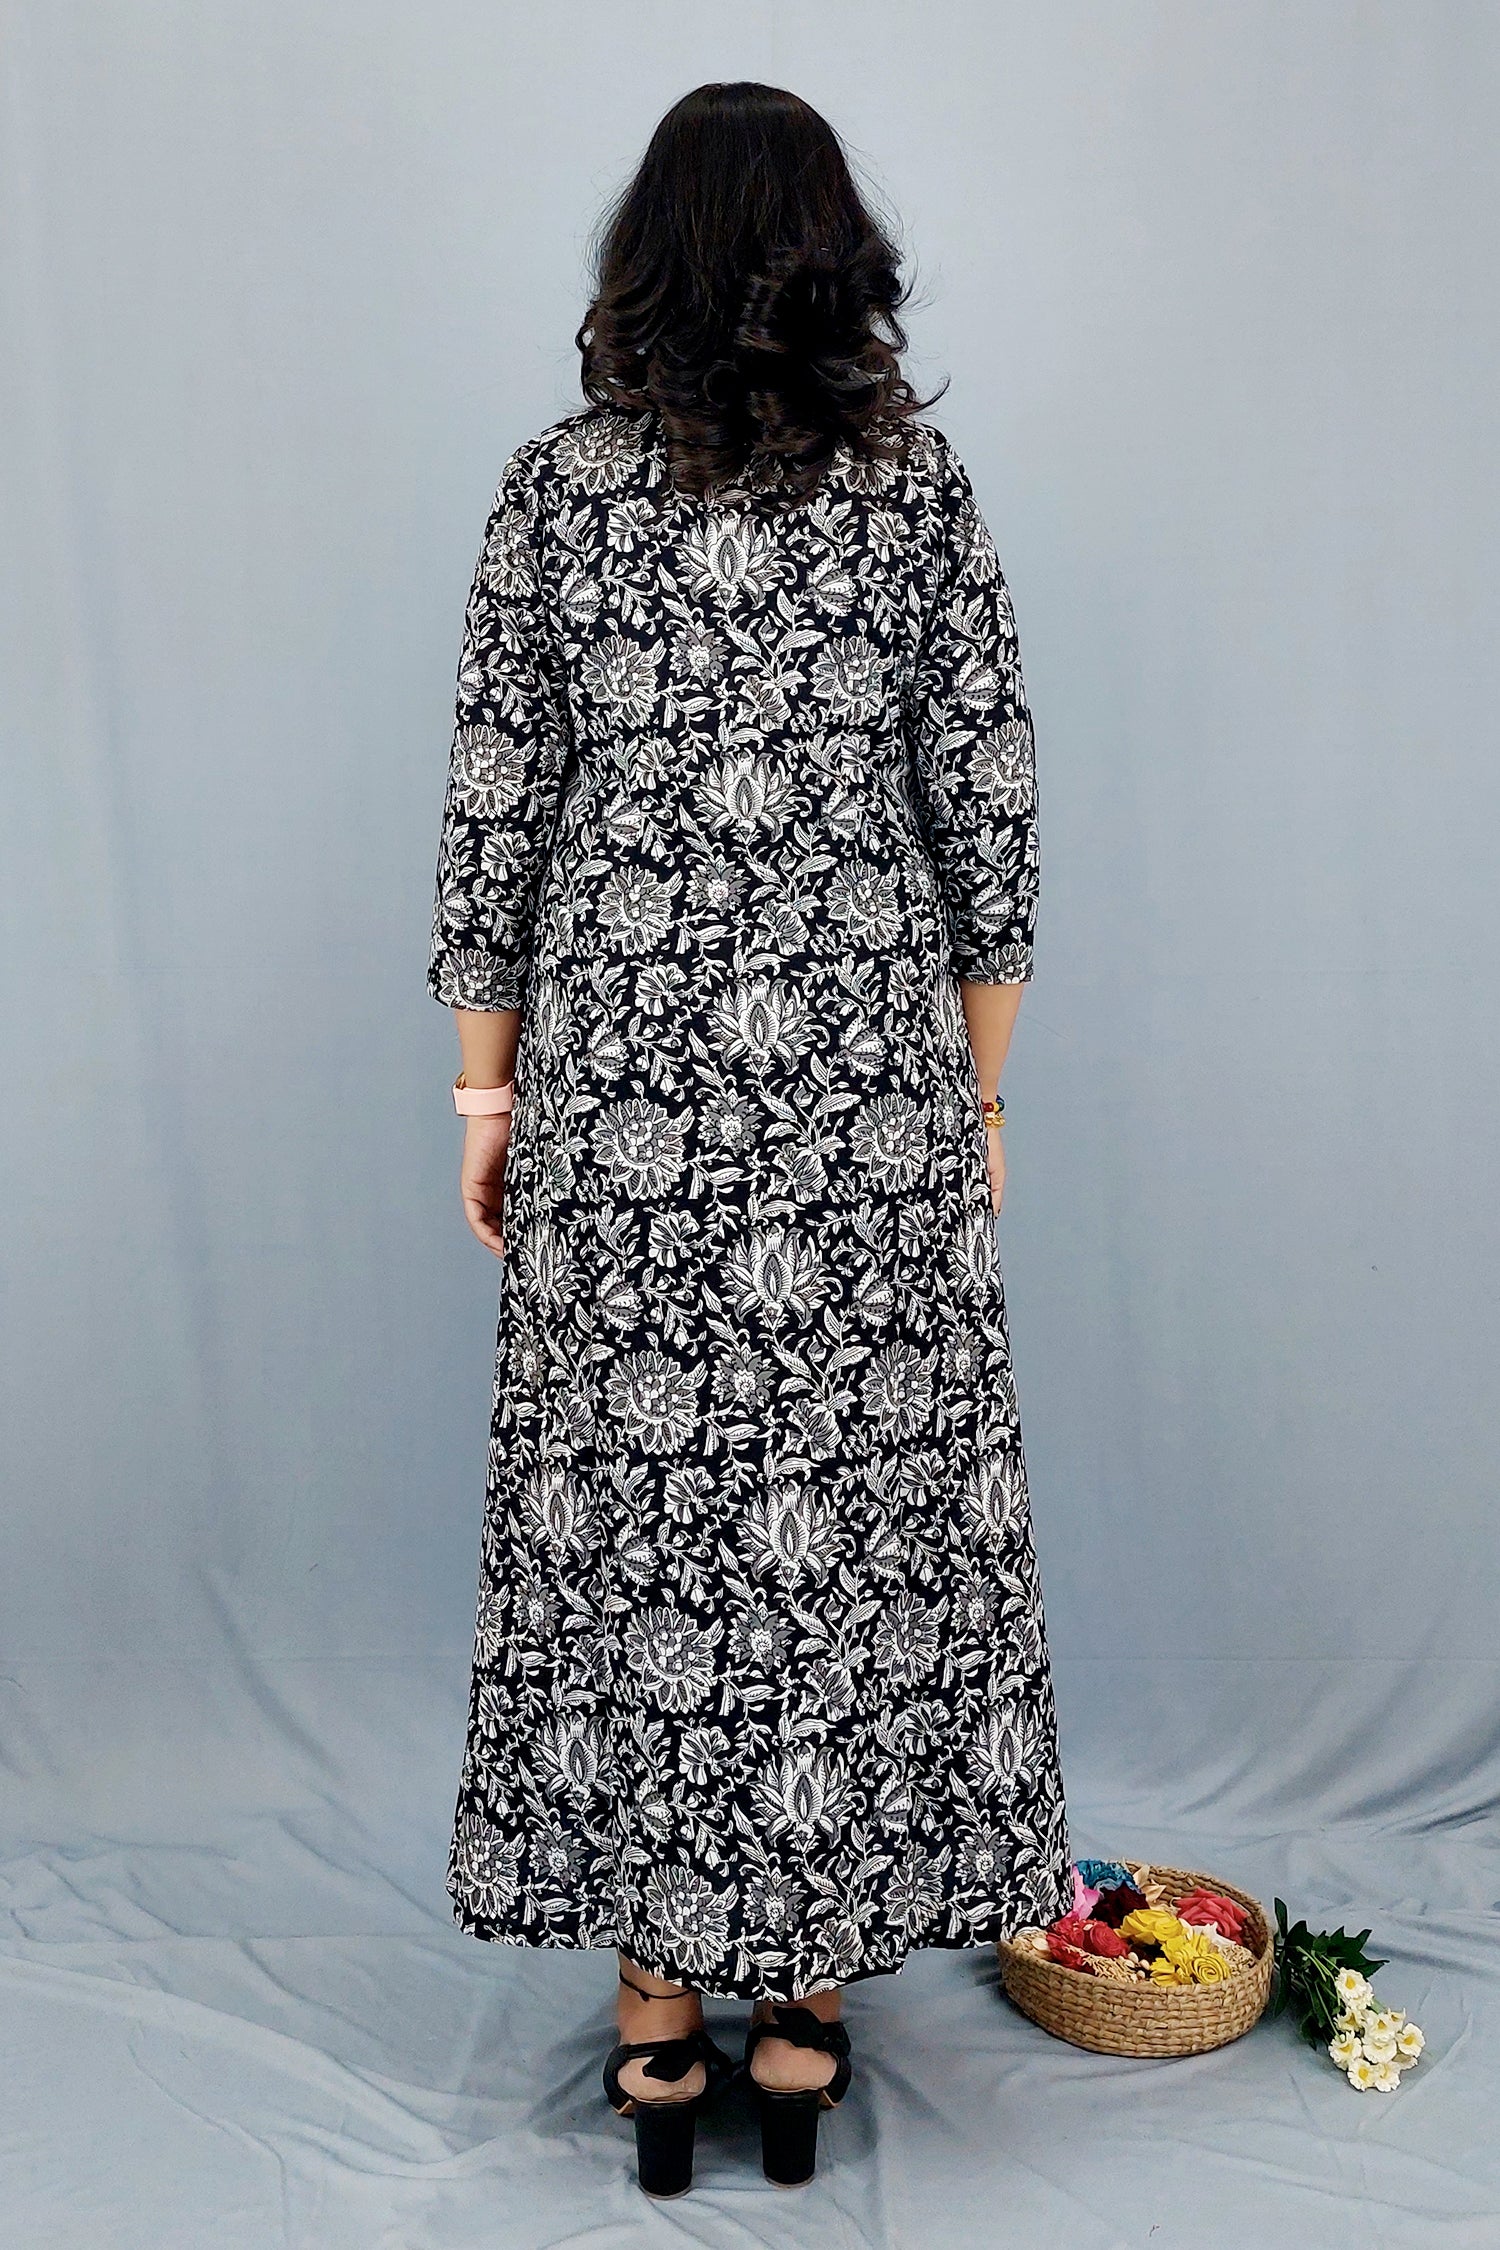 Dress cum Kurta with Printed Cotton Shrug- Set of 2 Dress Dress cum Kurta with Printed Cotton Shrug- Set of 2 Dress 